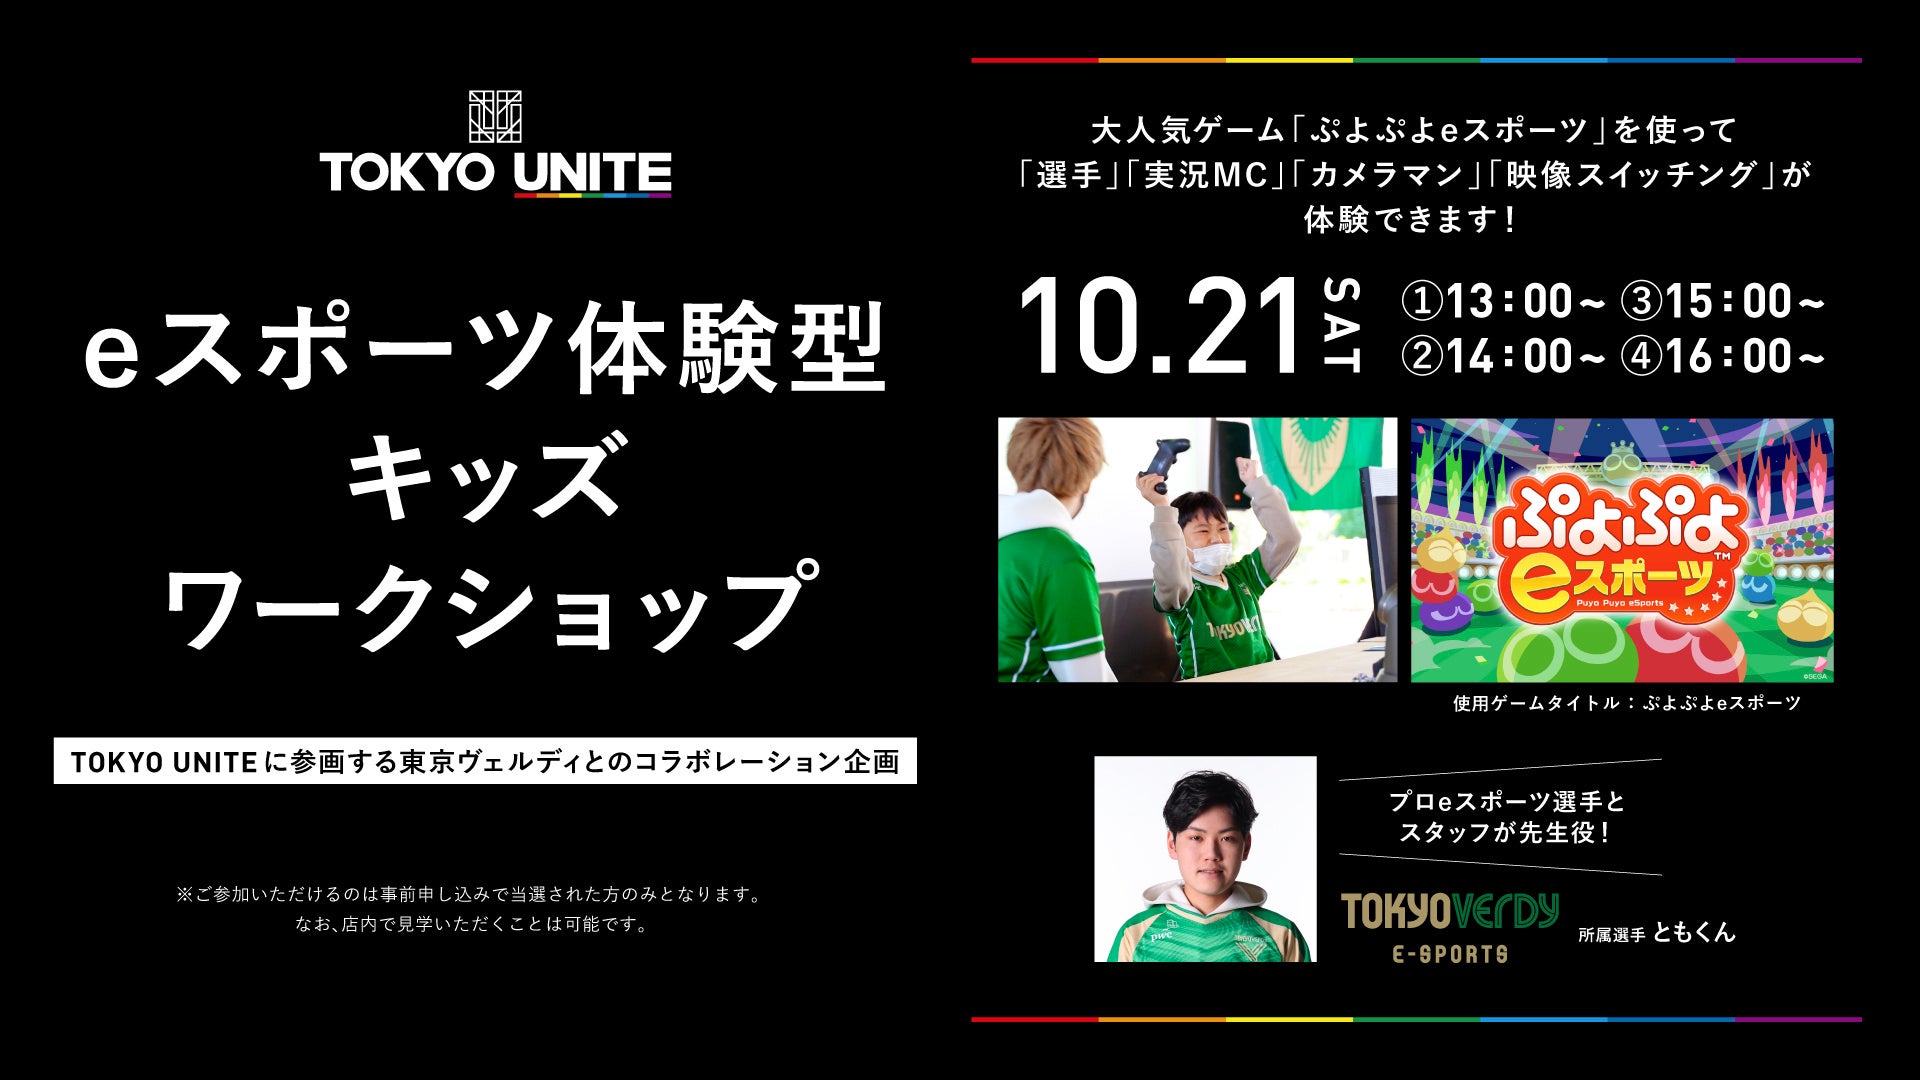 東京拠点のスポーツチーム団体プロジェクトのライフスタイルショップ「TOKYO UNITE 東京ミッドタウン八重洲」で東京ヴェルディeスポーツが体験型キッズワークショプを10月21日（土）に開催